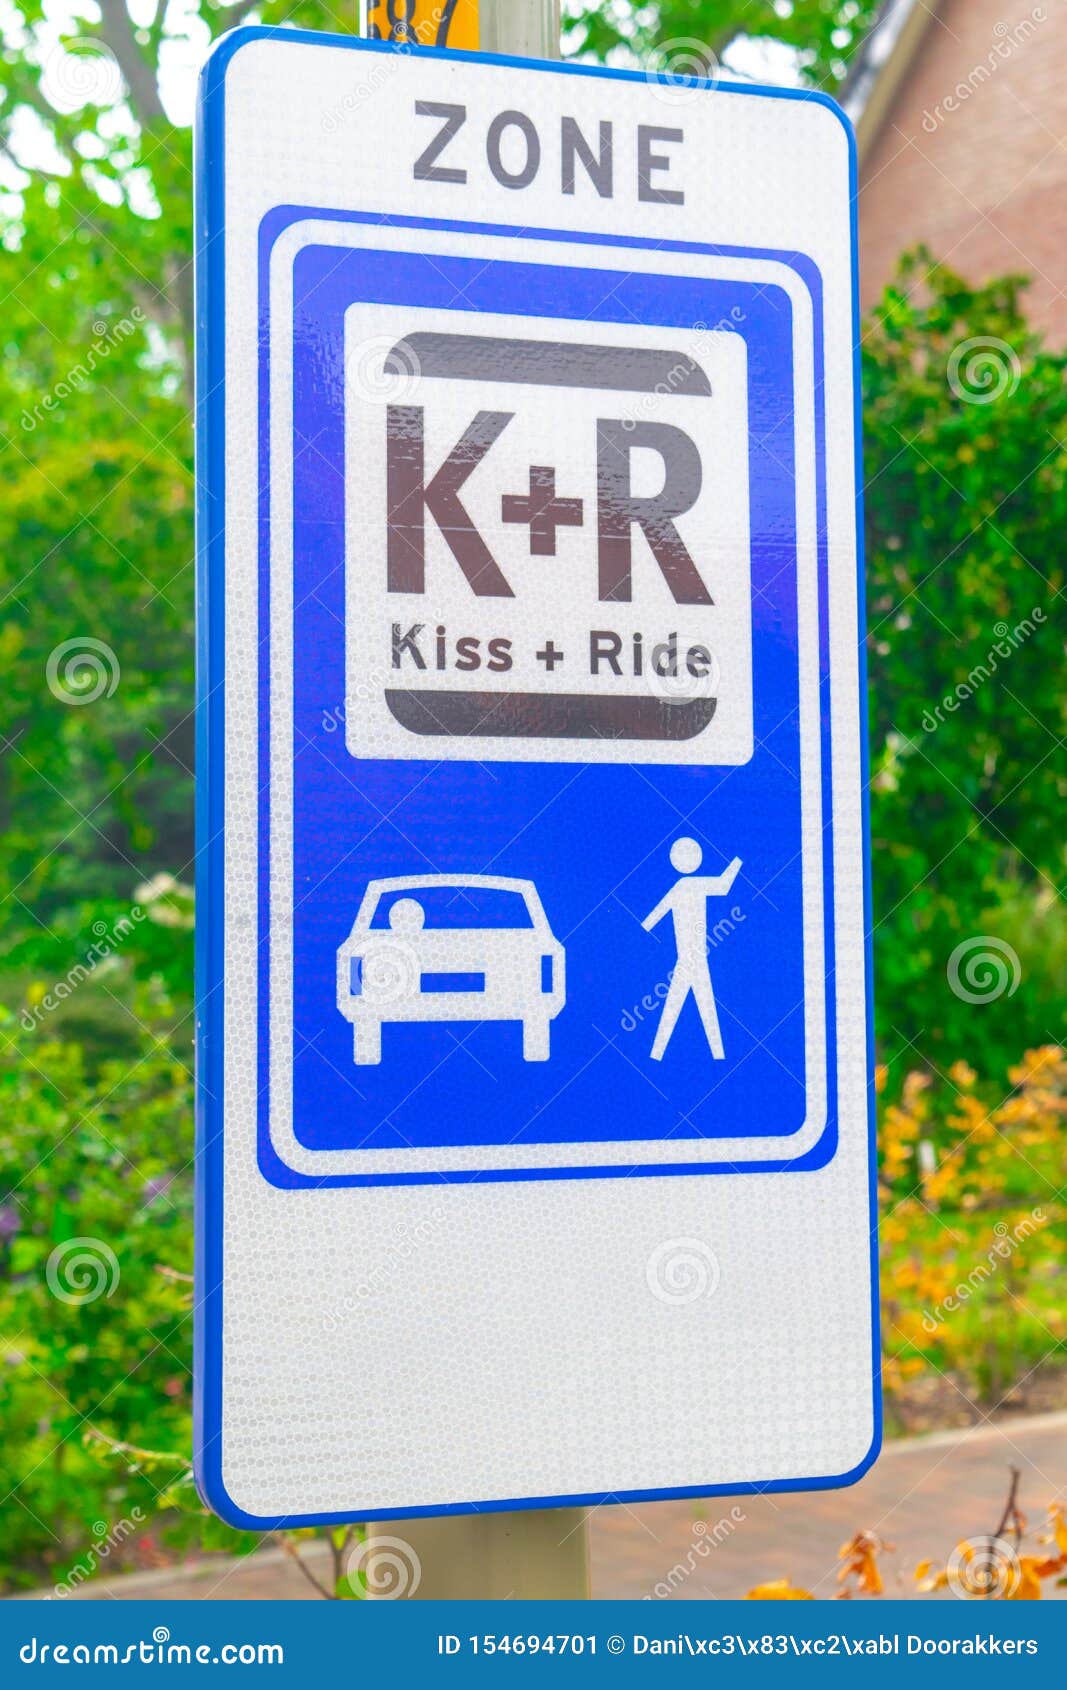 荷兰的路标吻和骑车. 荷兰公路标志 : 亲吻和骑行区，你可以很快把车停在这里，以便下车或接人